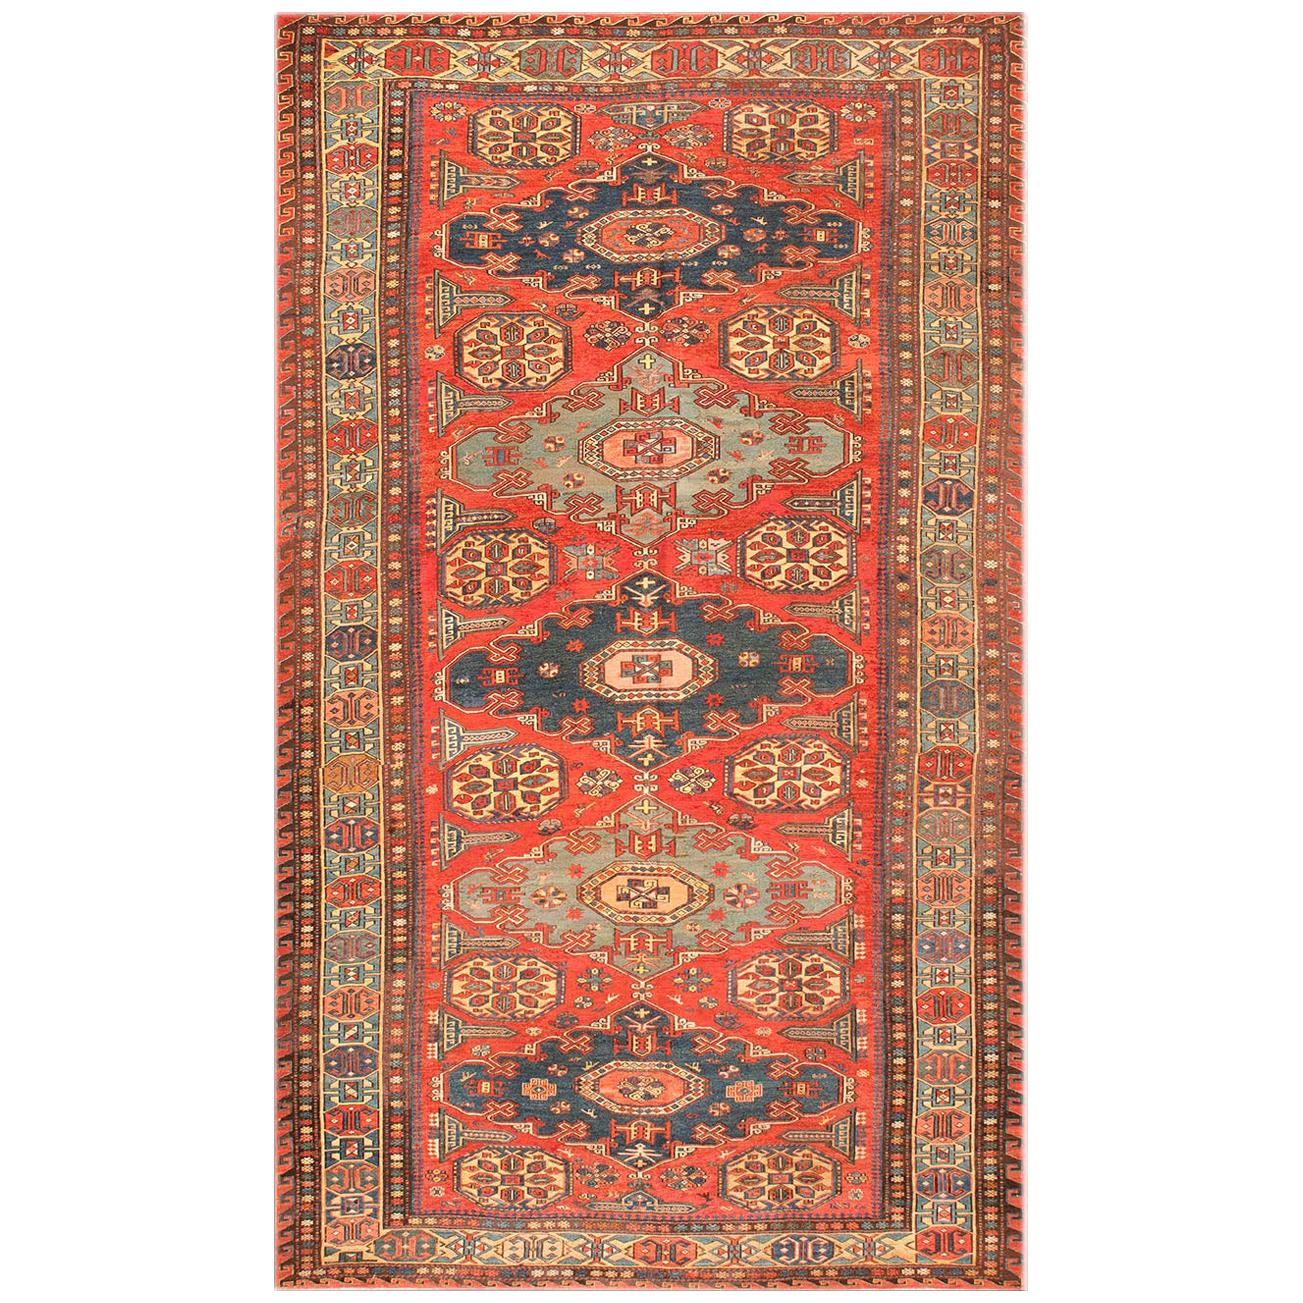 19th Century Caucasian Soumak Carpet ( 5' x 8'3" - 153 x 252 ) For Sale